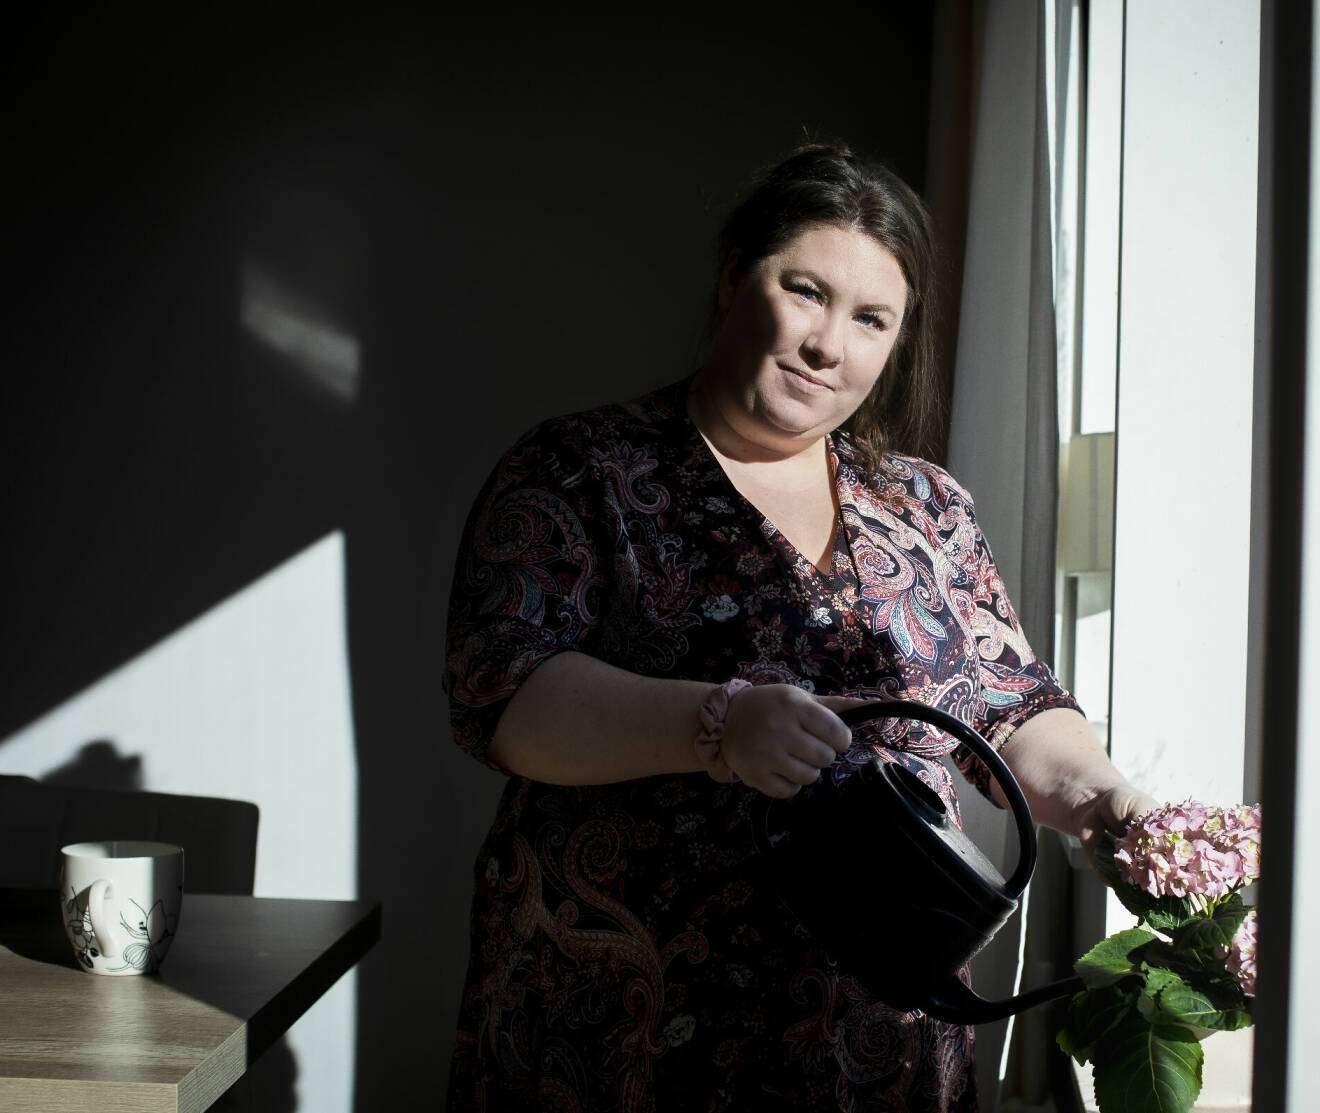 Sara Stelin vattnar blommor och berättar om sin svåra förlossningsdepression.